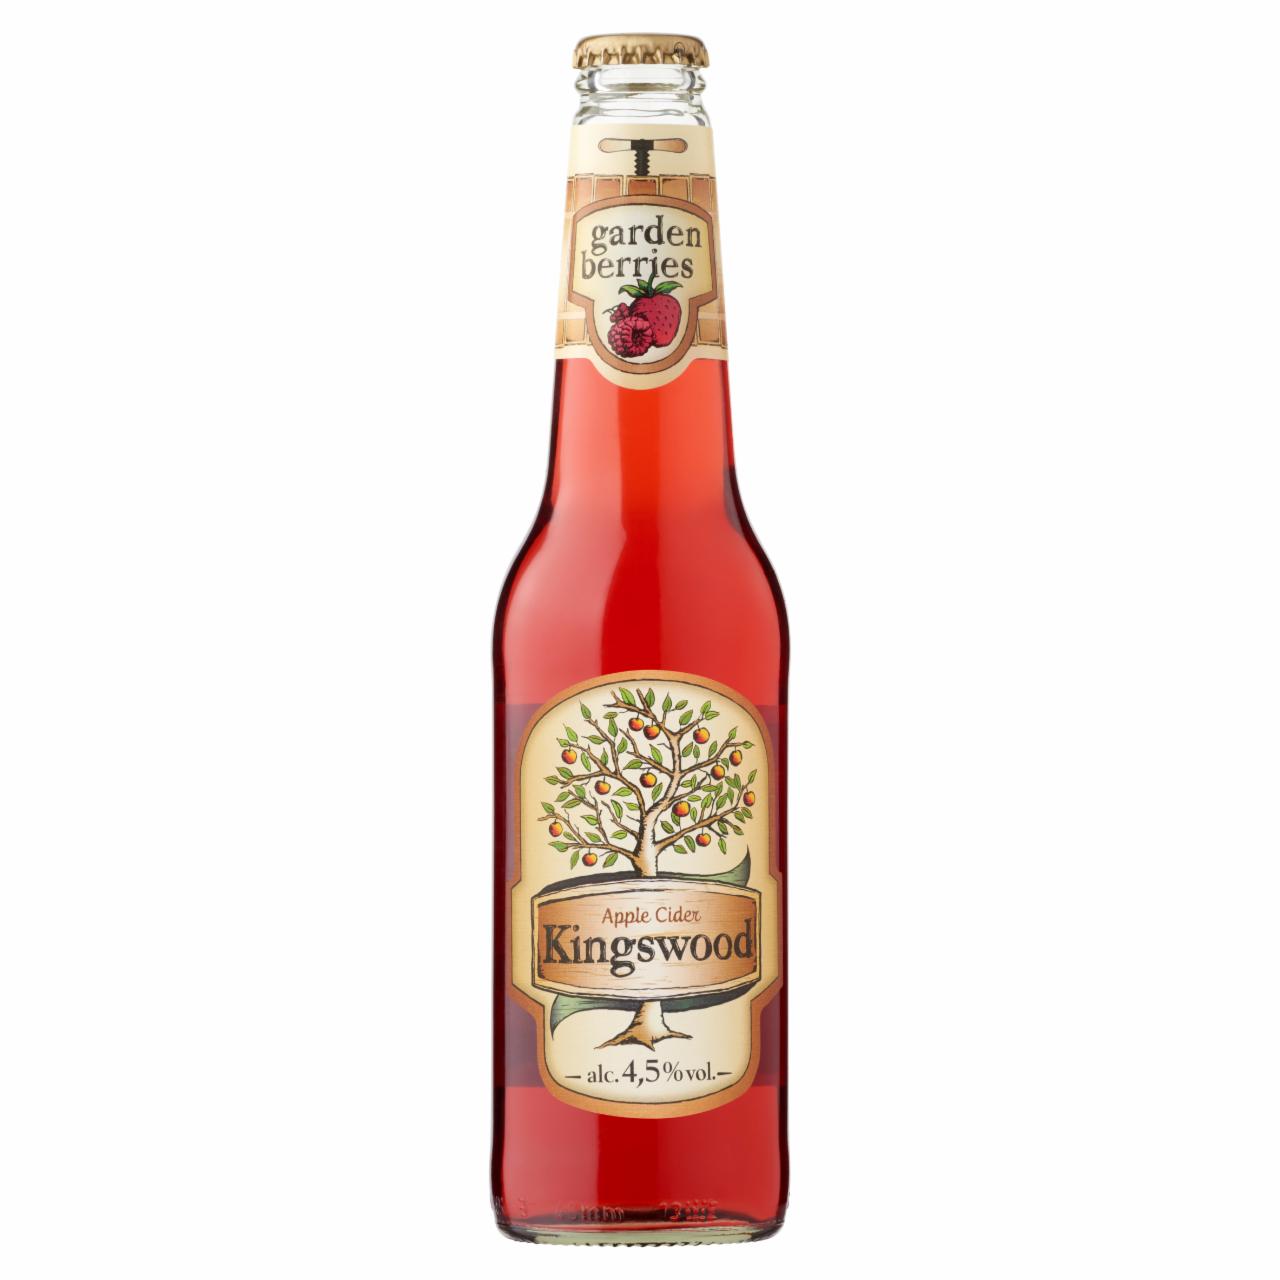 Képek - Kingswood Garden Berries eper-málna-ribizli ízű cider 4,5% 0,4 l